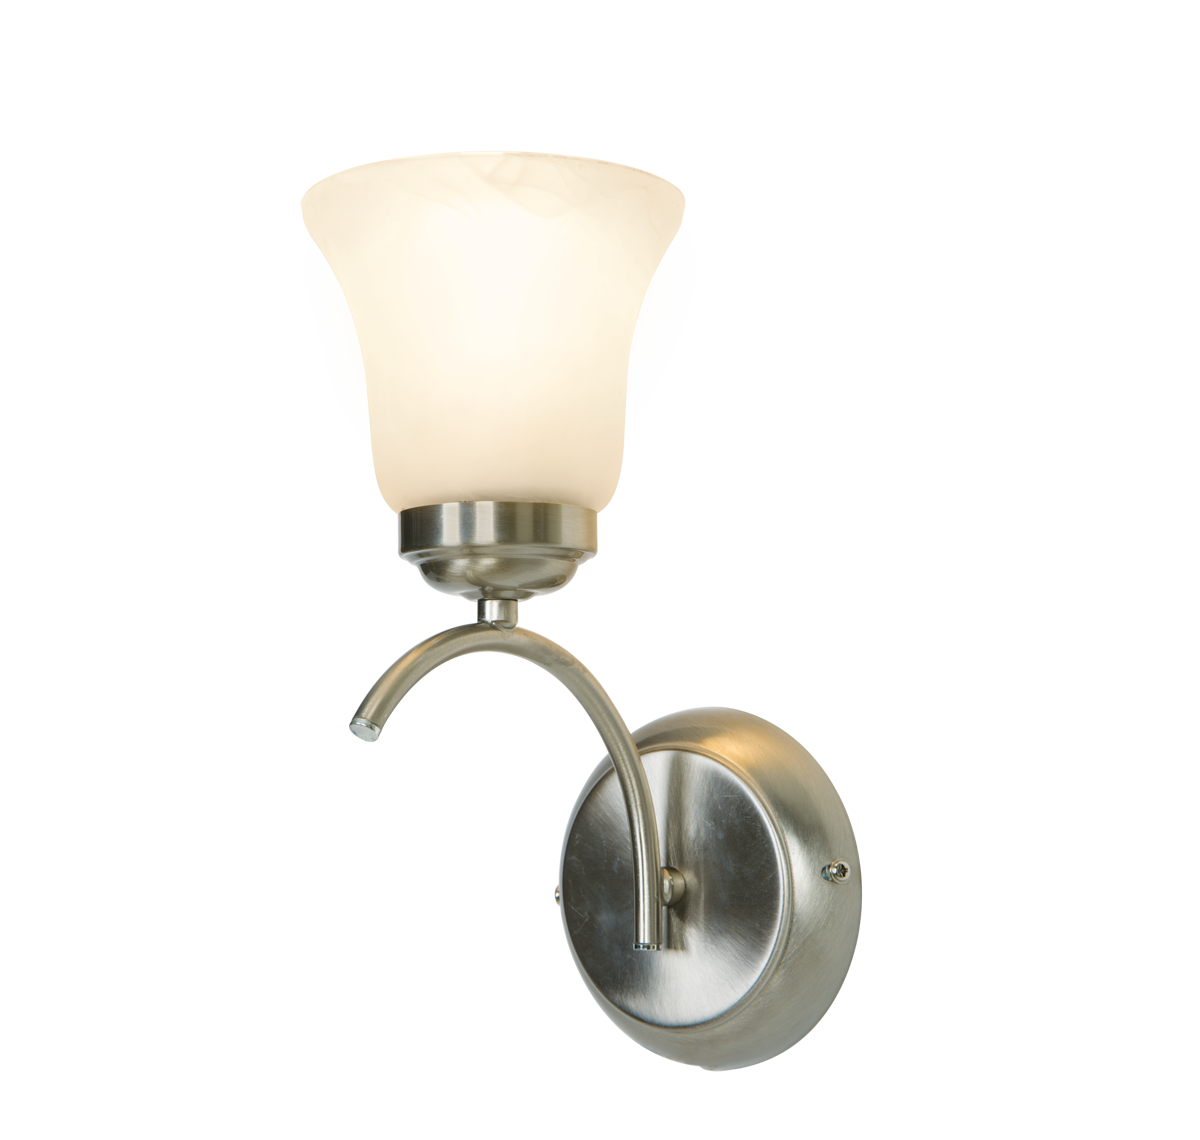 Декоративный свет лампы PNG Image